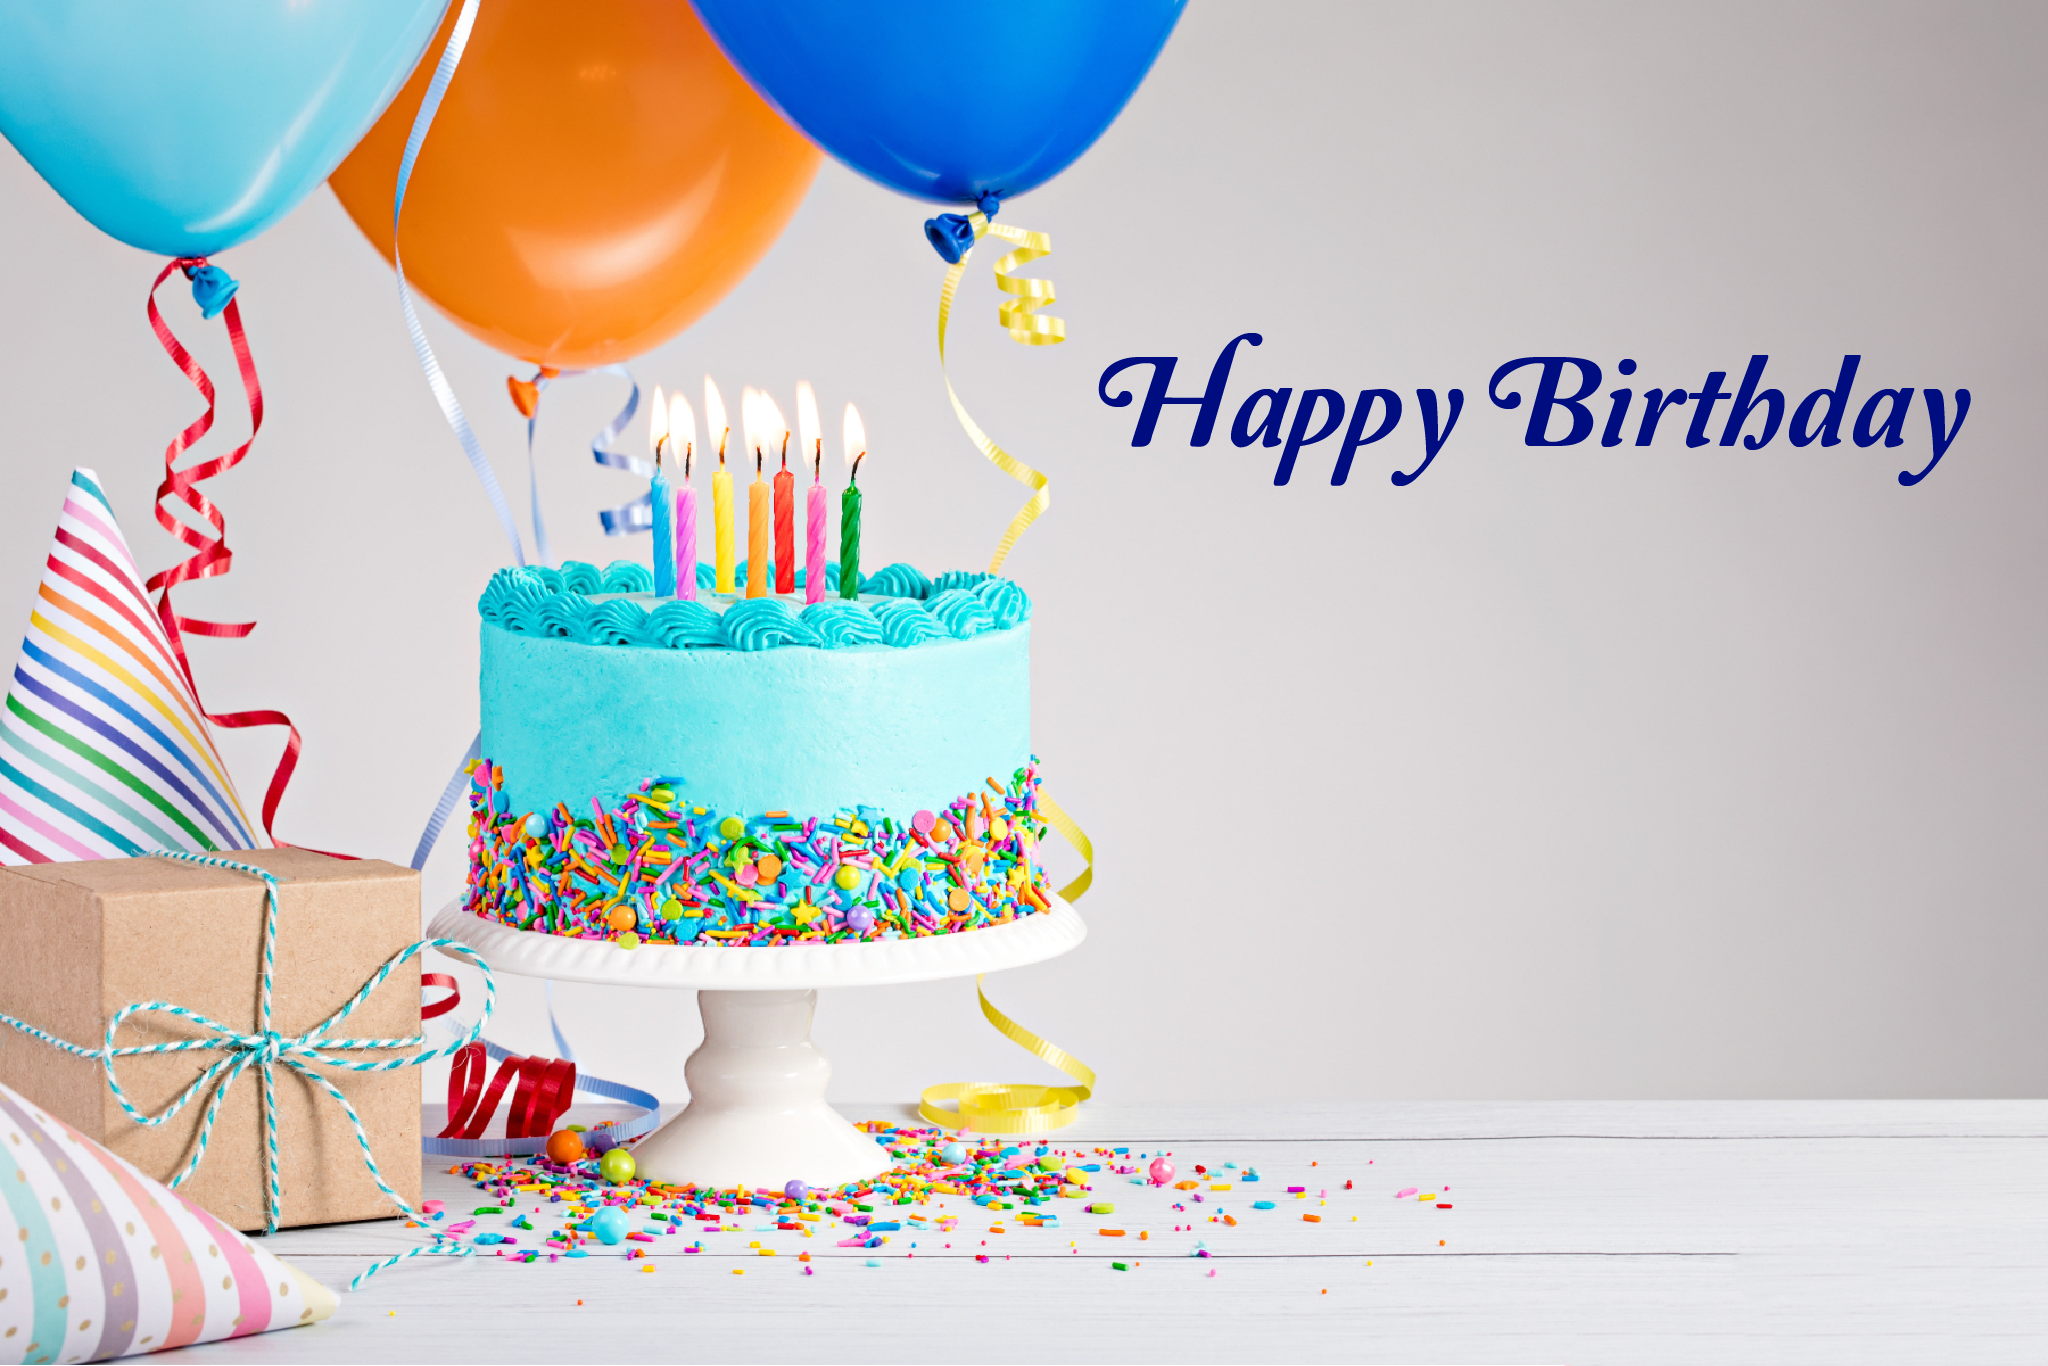 50 lời chúc mừng sinh nhật bựa bá đạo nhất dành cho bạn thân  Bizgift